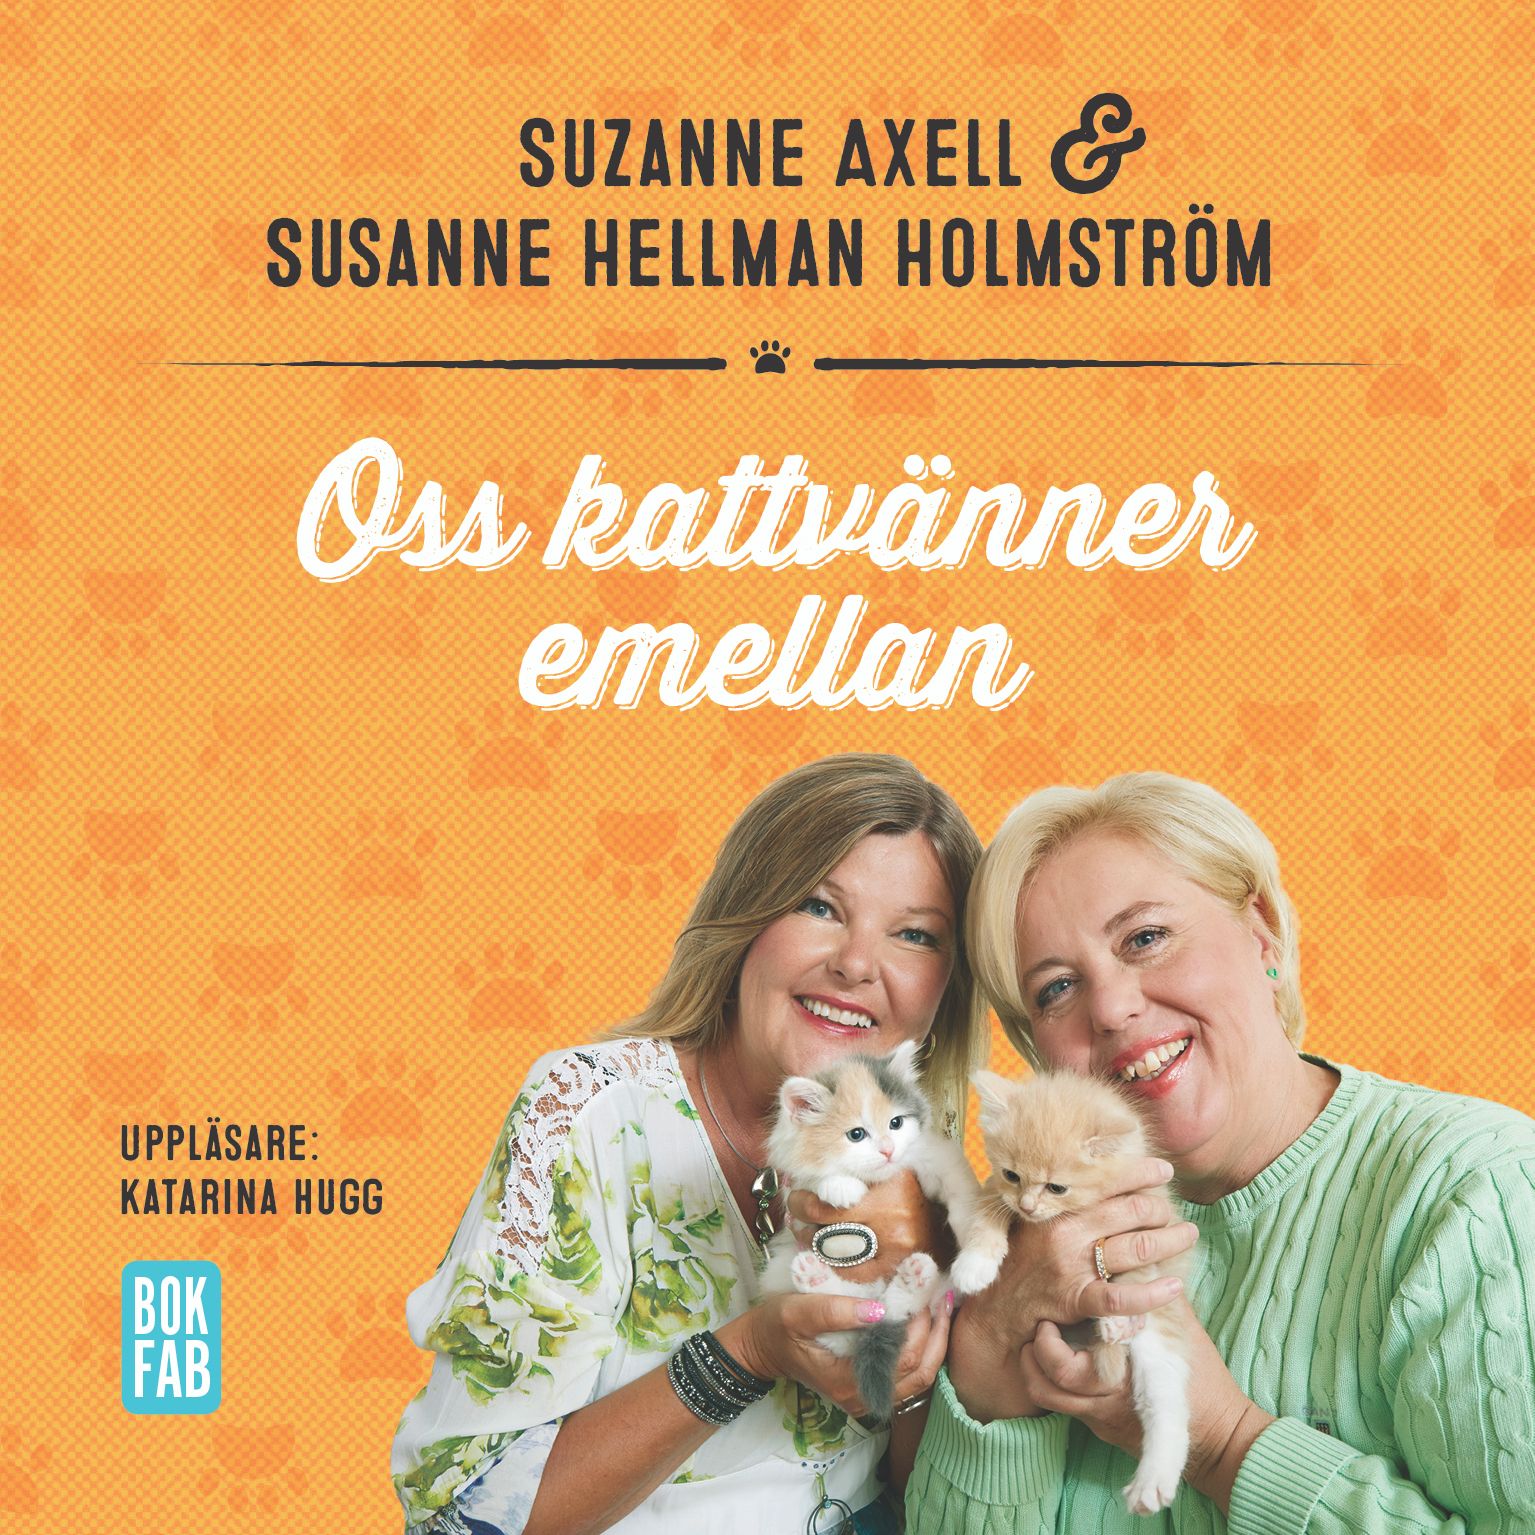 Oss kattvänner emellan, ljudbok av Suzanne Axell, Susanne Hellman Holmström